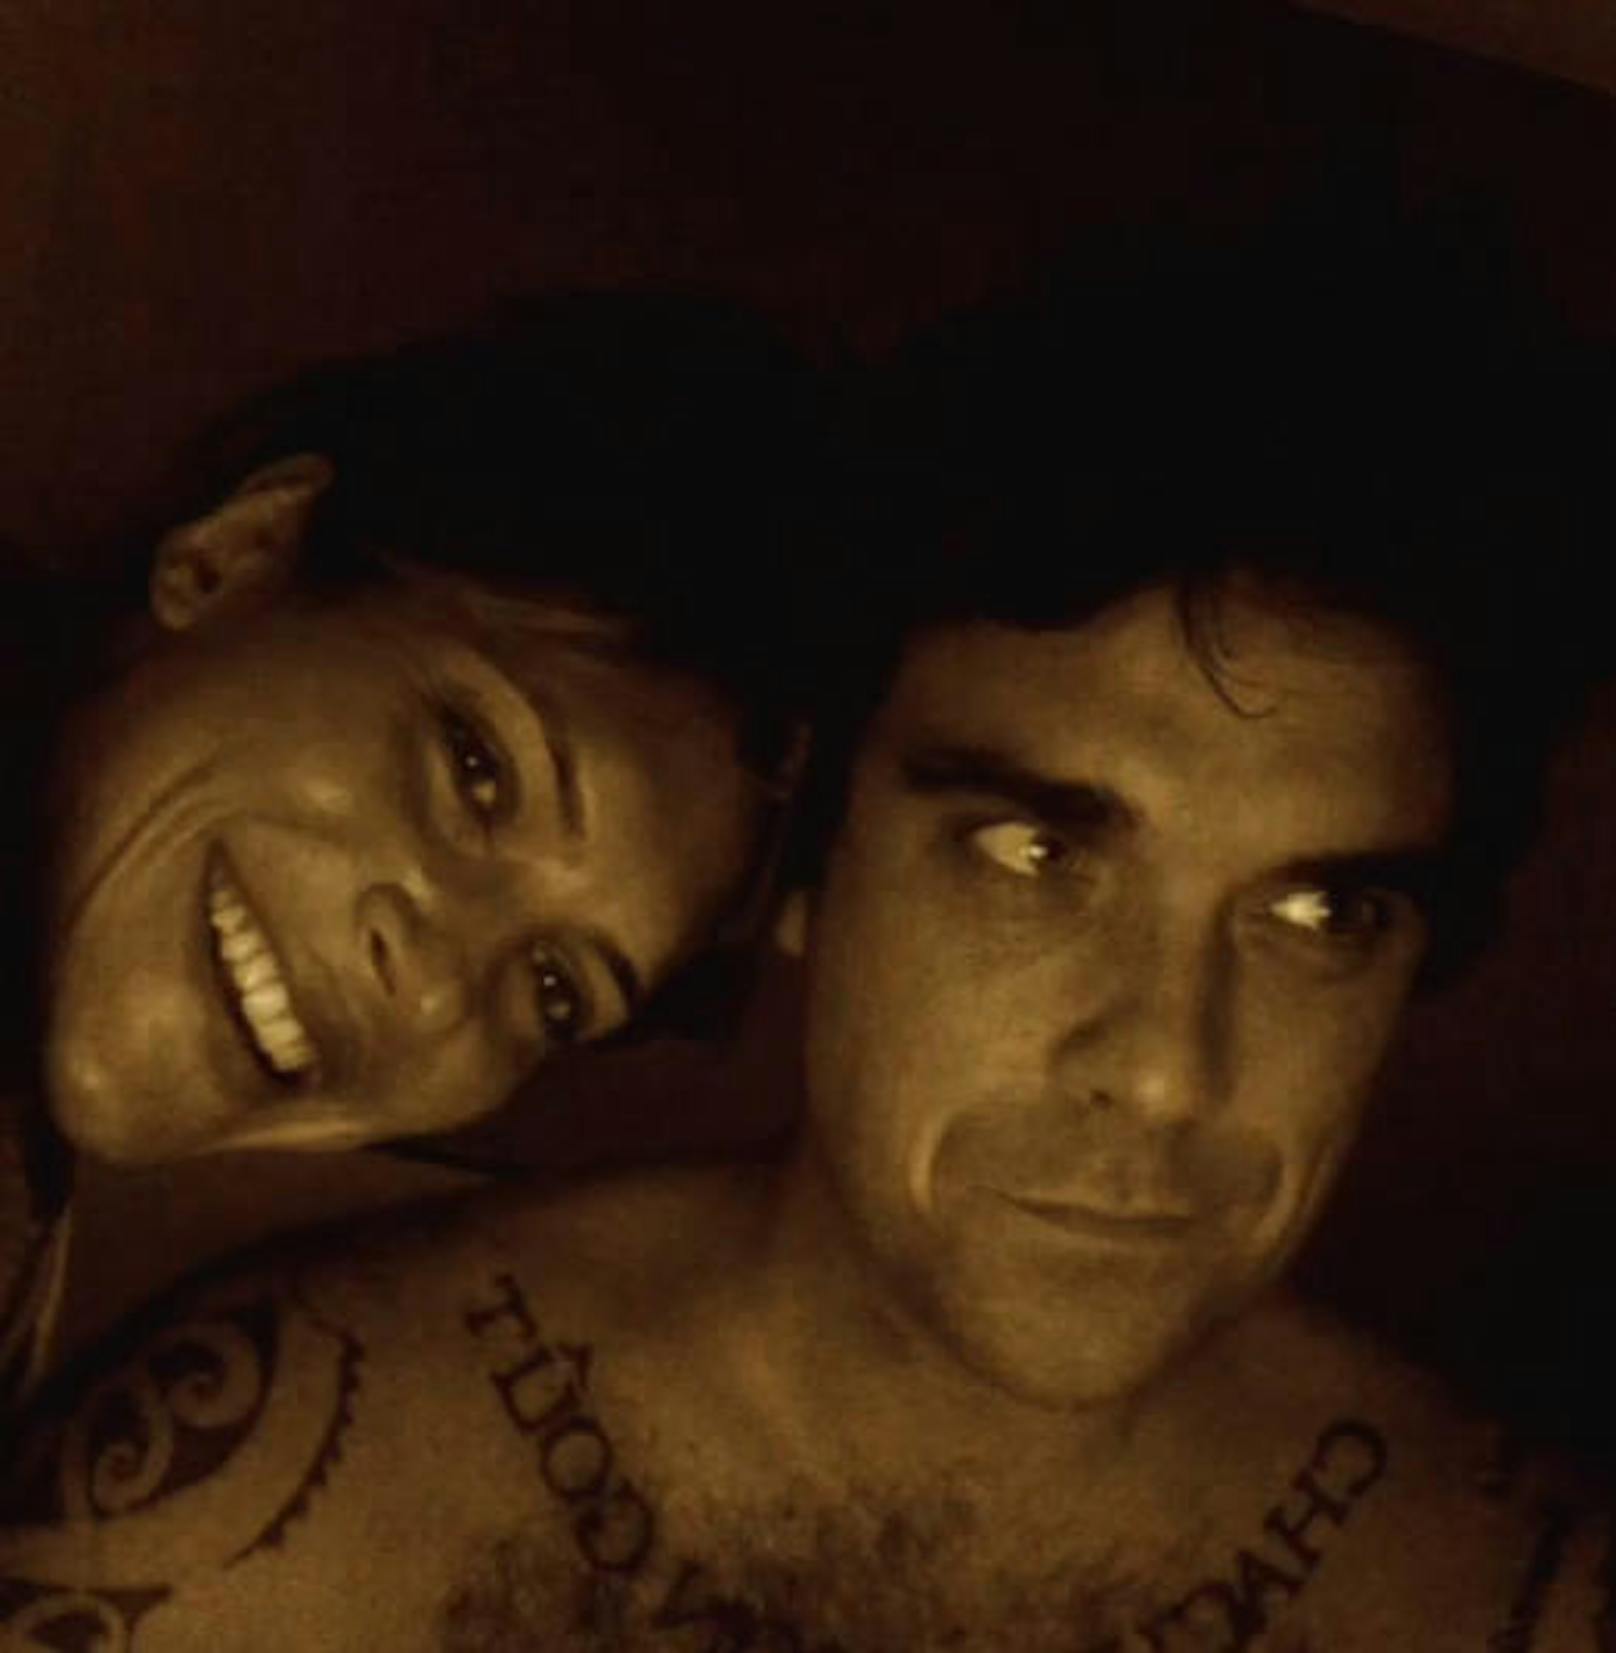 20.01.2018: Heute vor 11 Jahren ließen sich Robbie Williams und Ayda Fields auf ein Blind Date ein. Es sei Liebe auf den 1. Blick gewesen, sagen sie - und trotz zweier Kinder und einigen Jahren Ehe auf dem Buckel dürften sich die beiden noch total lieben. 